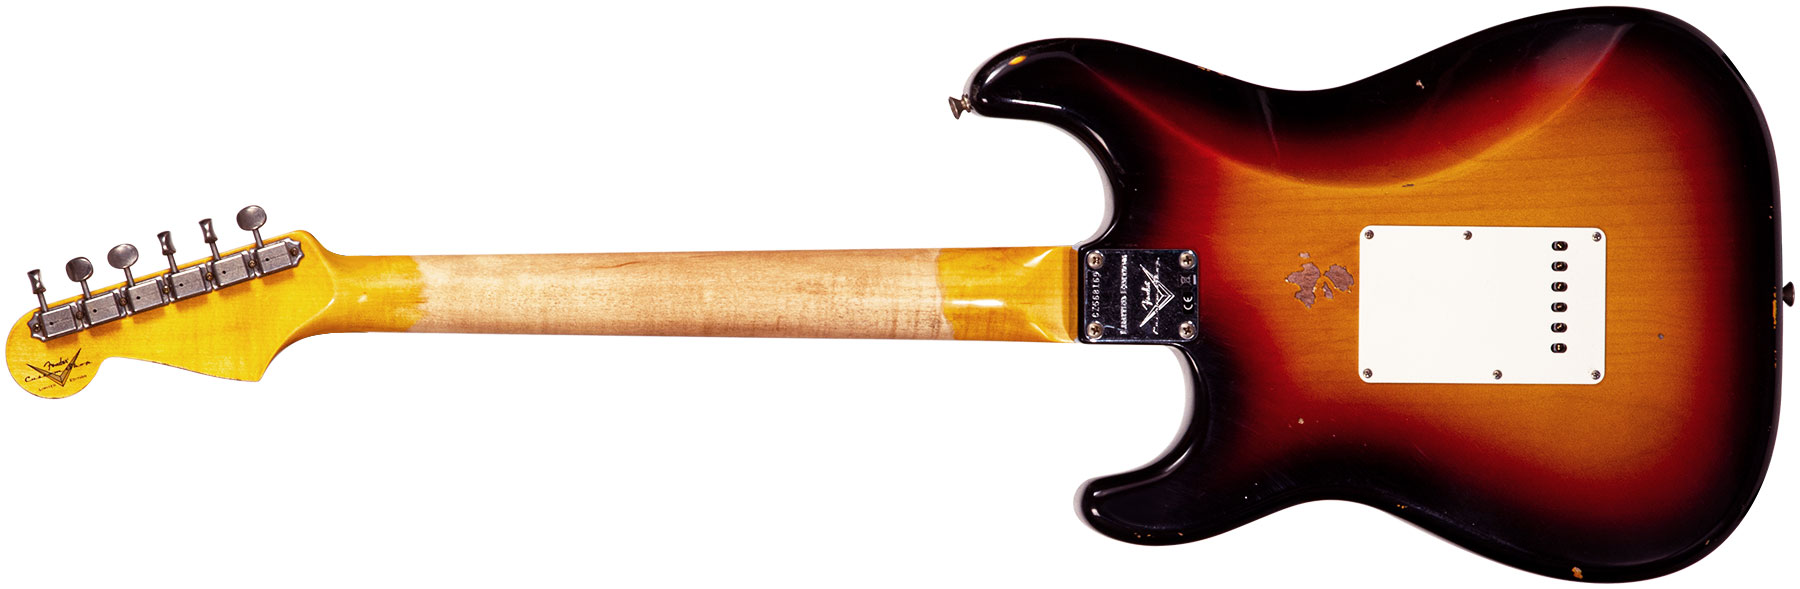 Fender Custom Shop Strat Late 64 3s Trem Rw #cz568169 - Relic Target 3-color Sunburst - Str shape electric guitar - Variation 1